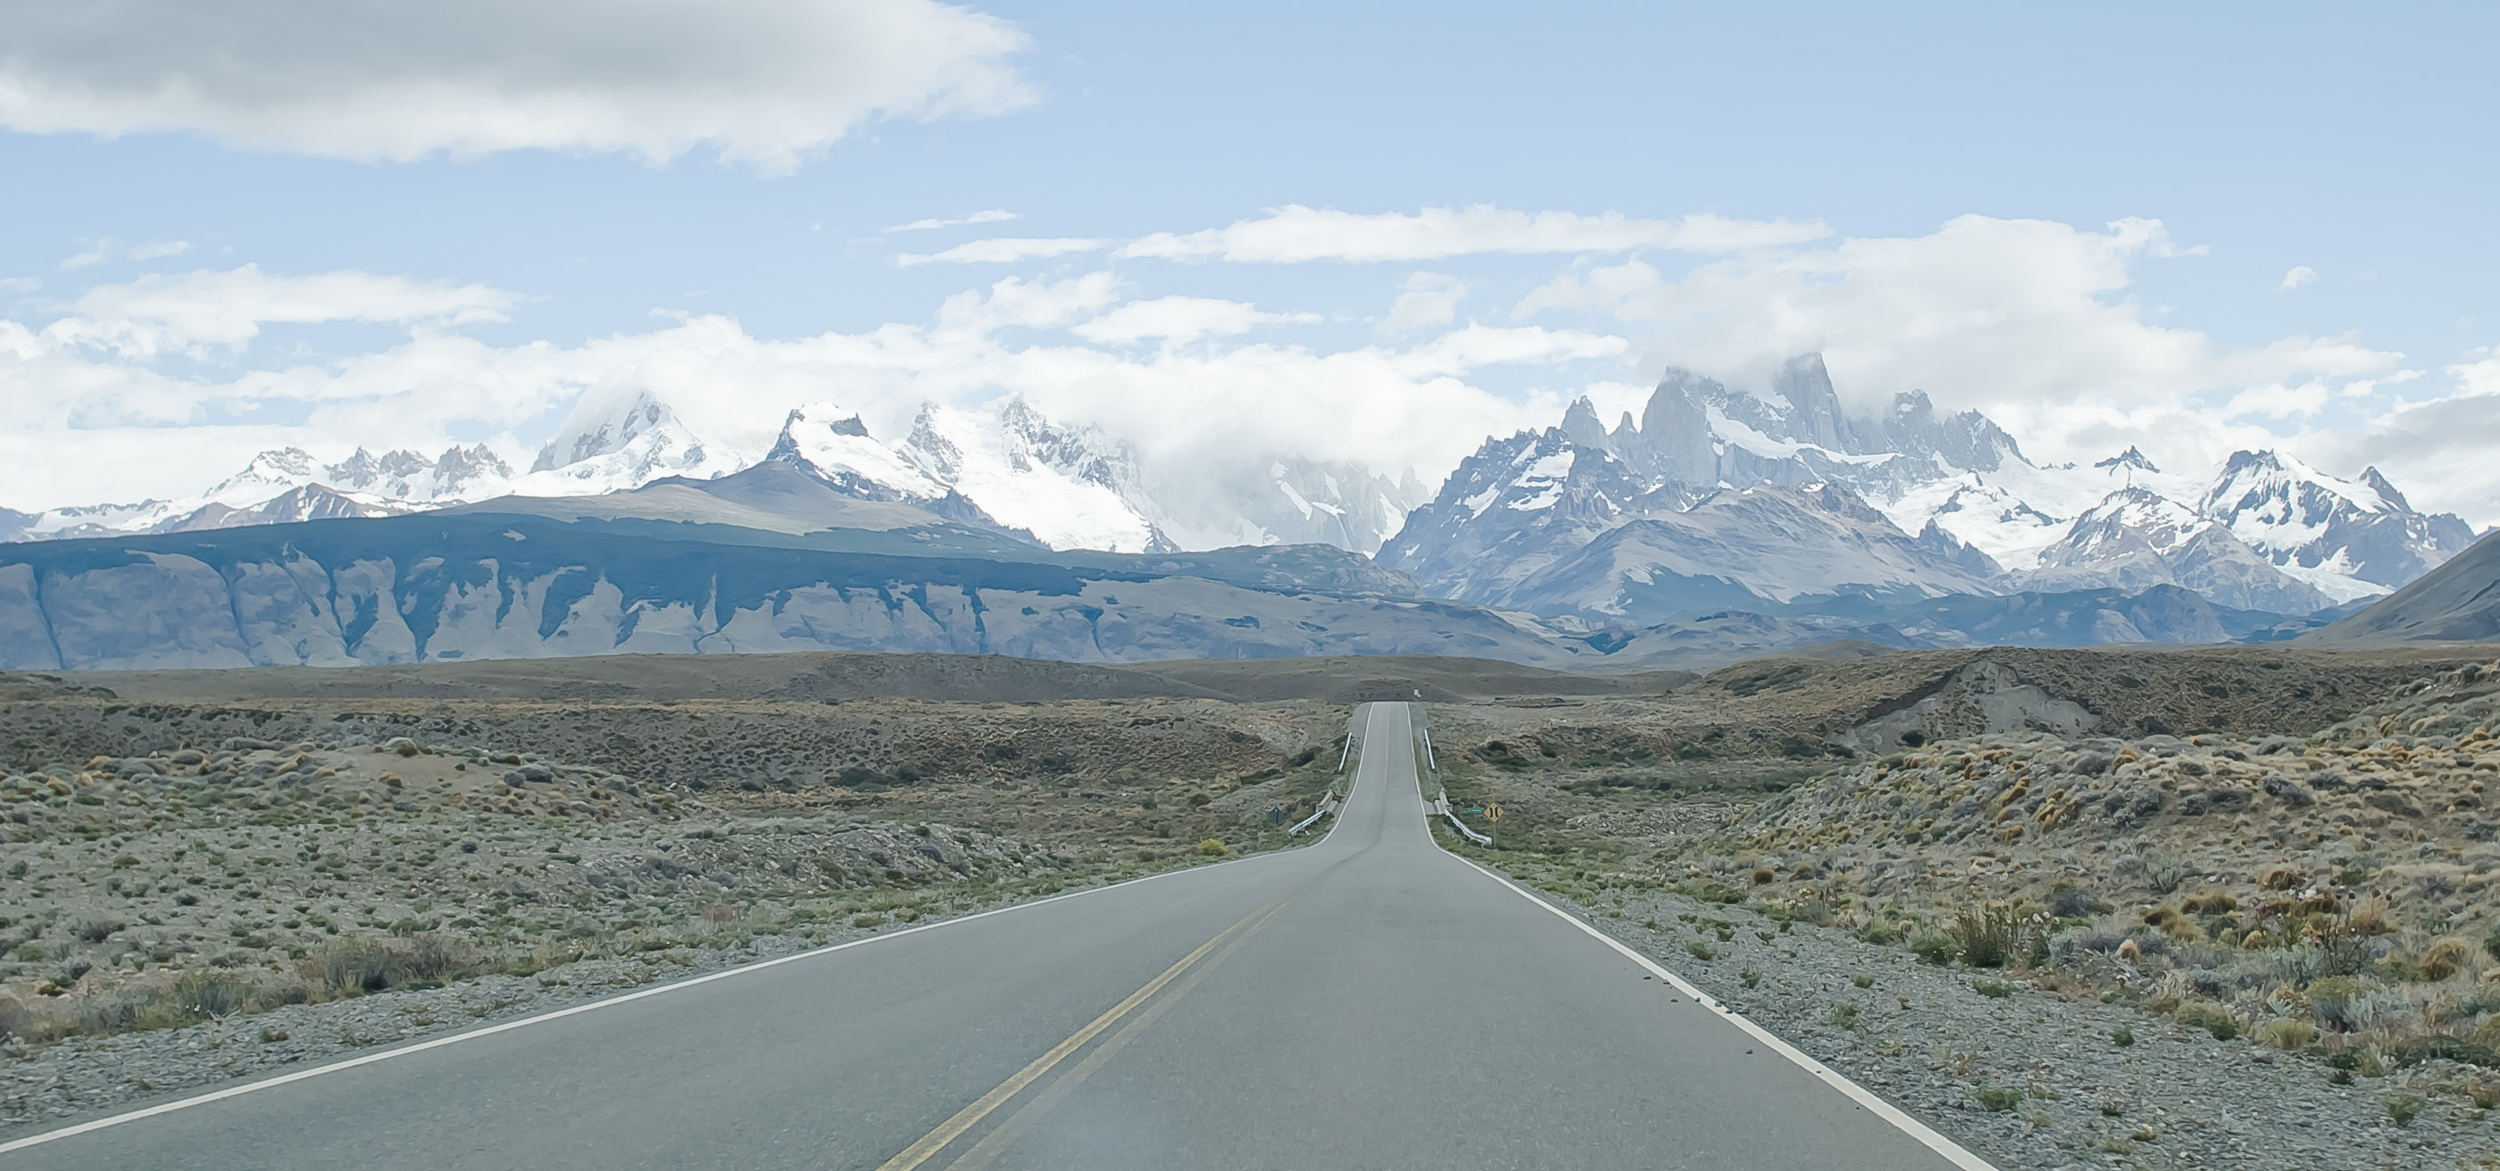   Paisajes de la Patagonia   Uno de los mayores espectáculos de la naturaleza   IR  